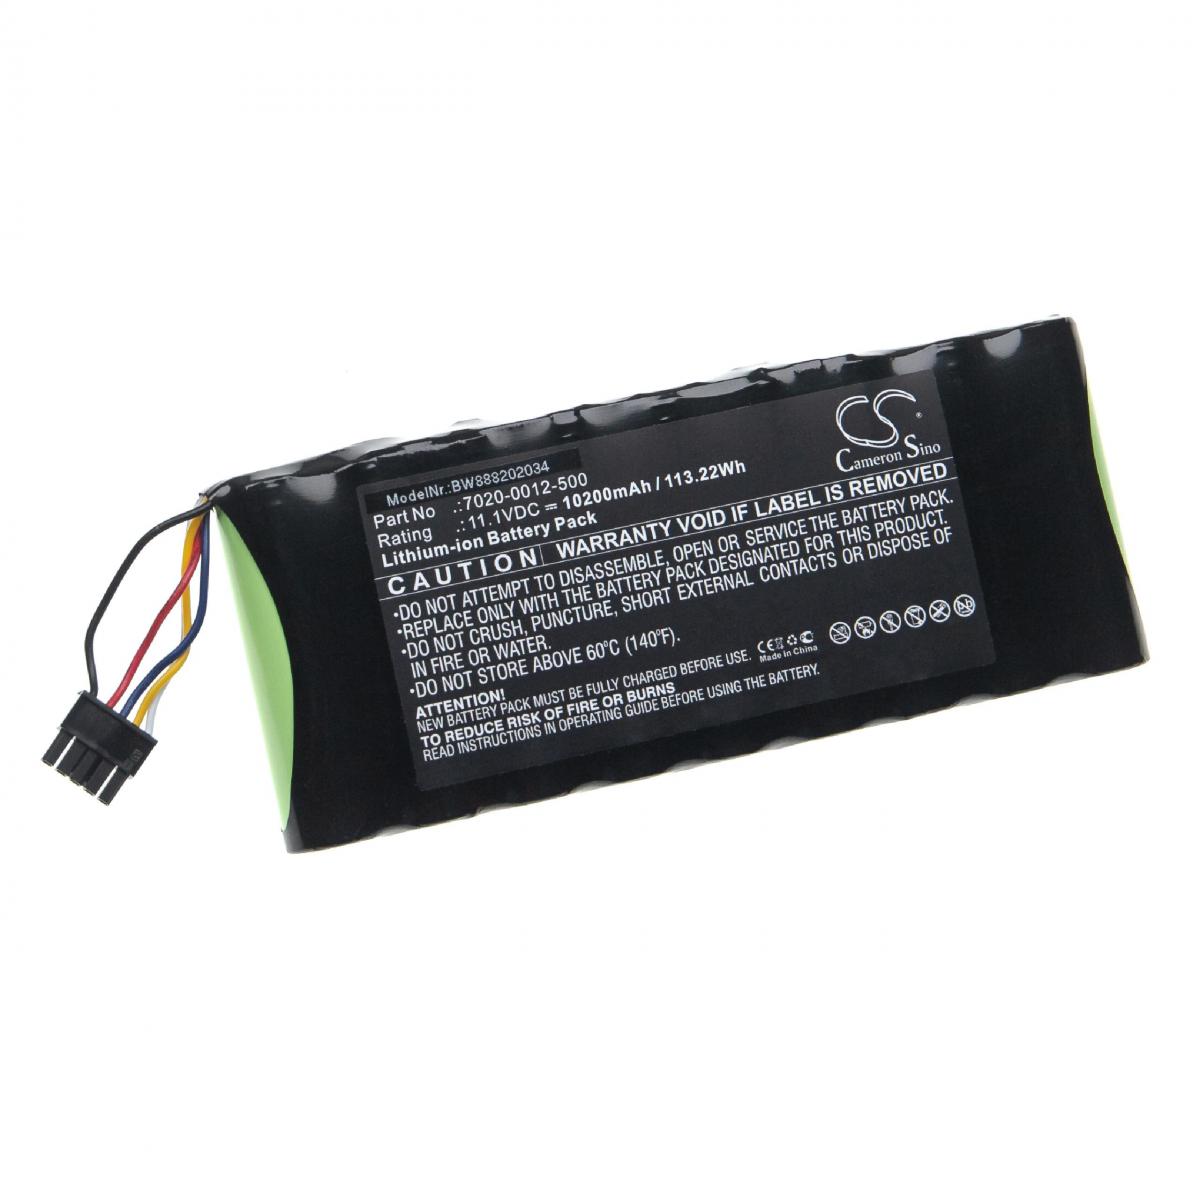 Vhbw - vhbw Batterie remplacement pour Aeroflex 7020-0012-500 pour outil de mesure (10200mAh, 11,1V, Li-Ion) - Piles rechargeables